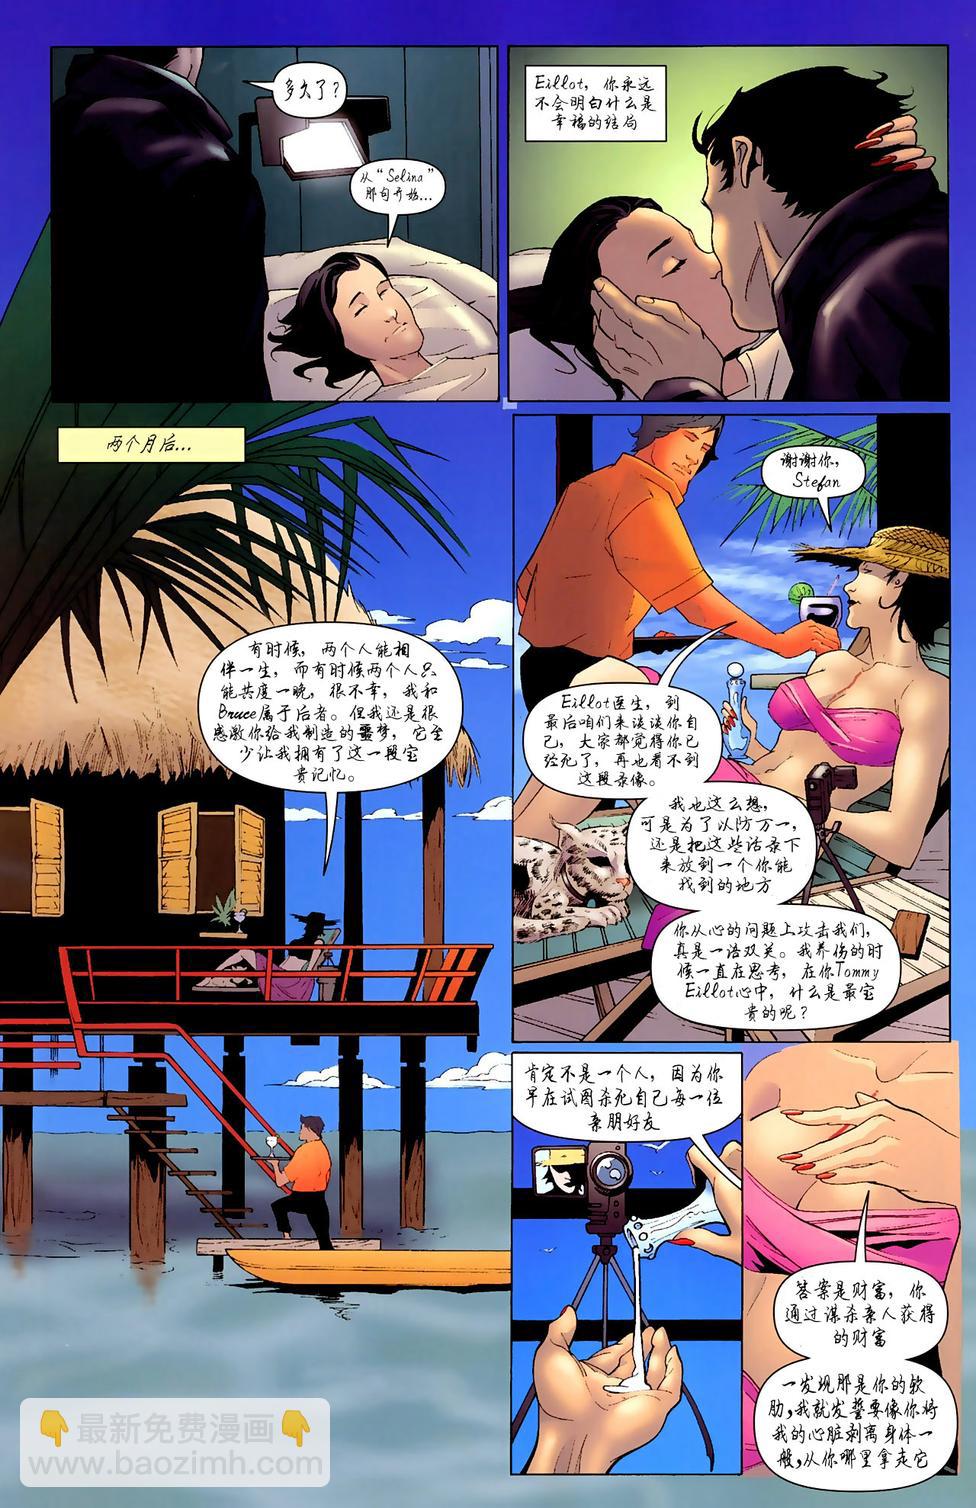 偵探漫畫 - 第850卷R.I.P.寂靜之心#5 - 1